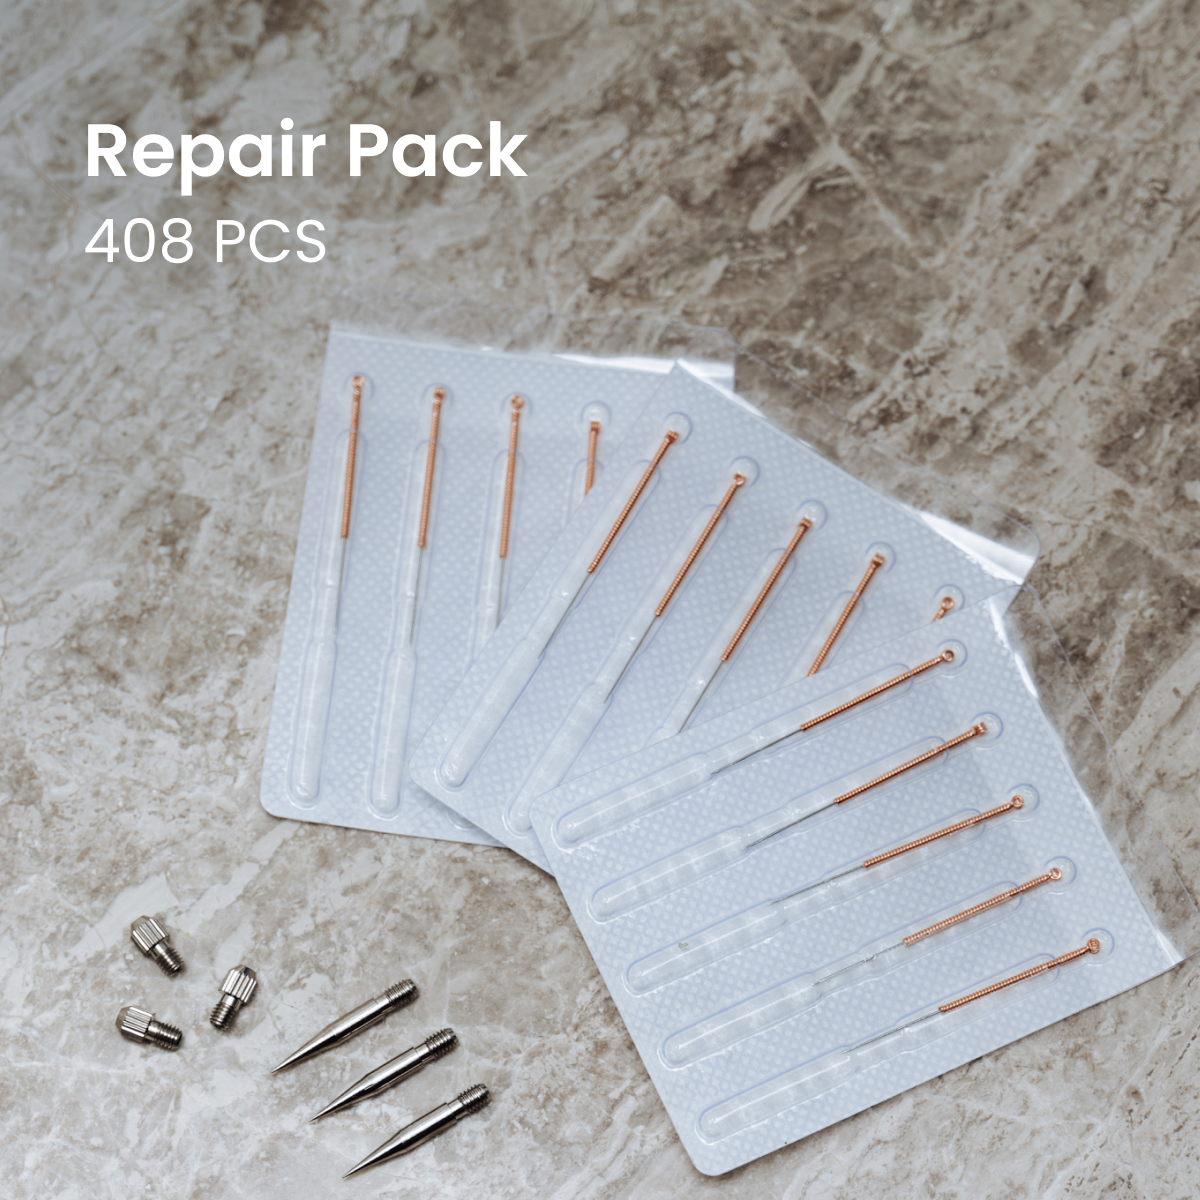 Offre groupée : Kit Beauty Spa (10x) + Pack de réparation (408 pièces) + Guide gratuit